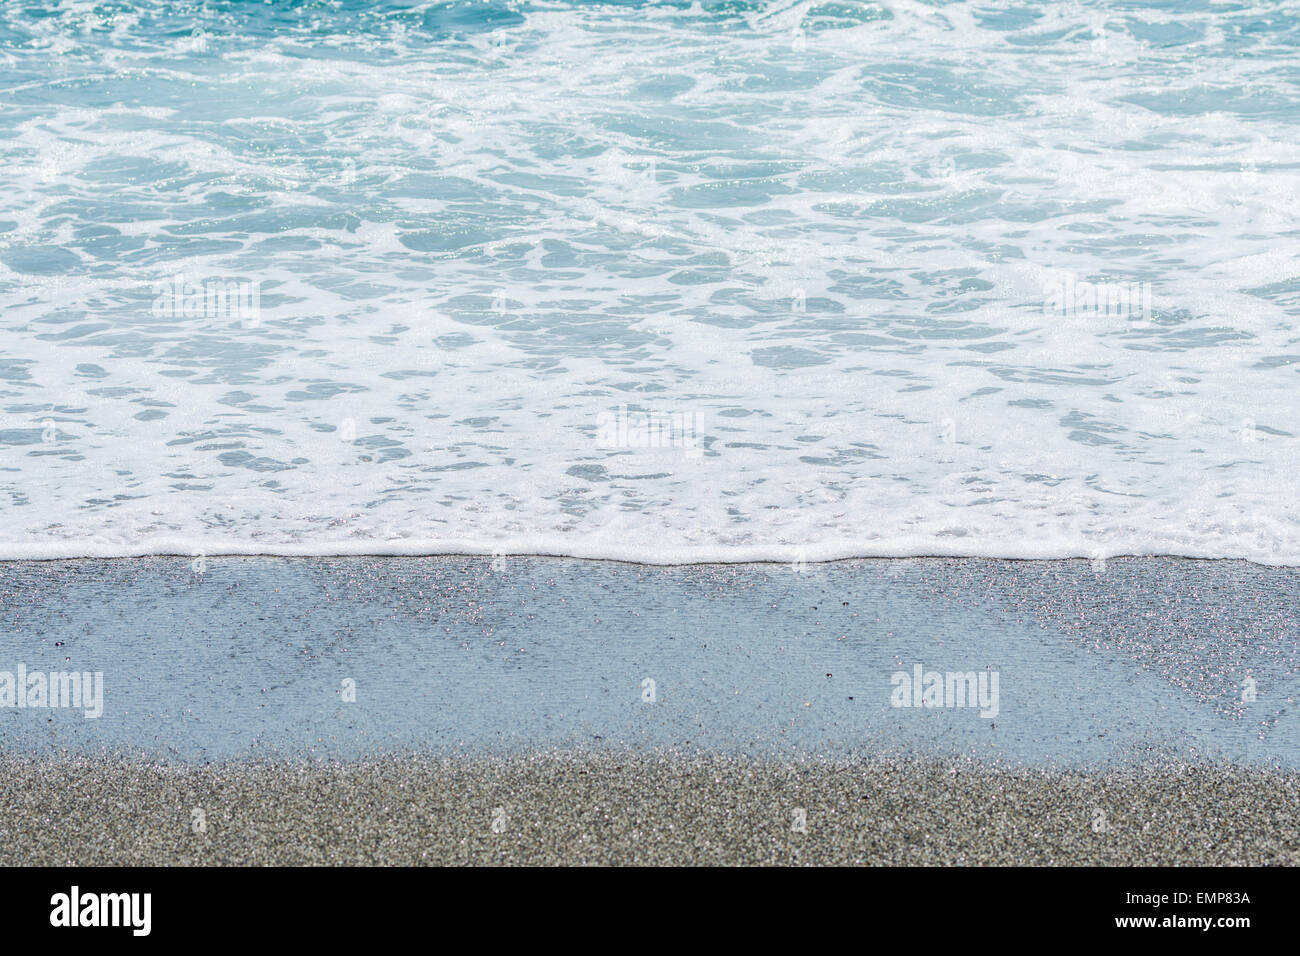 La marea su una spiaggia con sabbia bagnata. Foto Stock